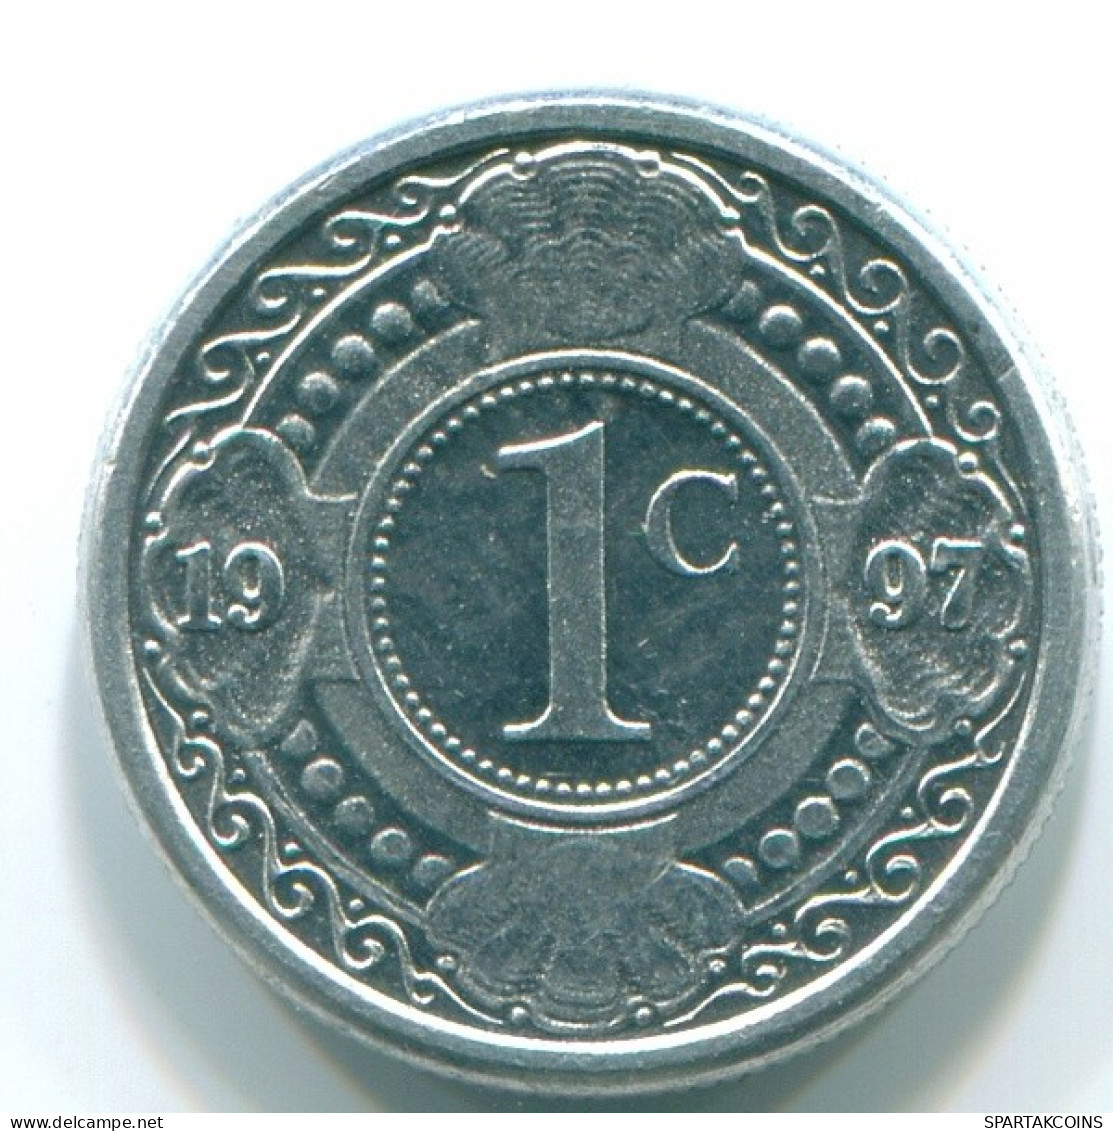 1 CENT 1996 NETHERLANDS ANTILLES Aluminium Colonial Coin #S13141.U.A - Niederländische Antillen